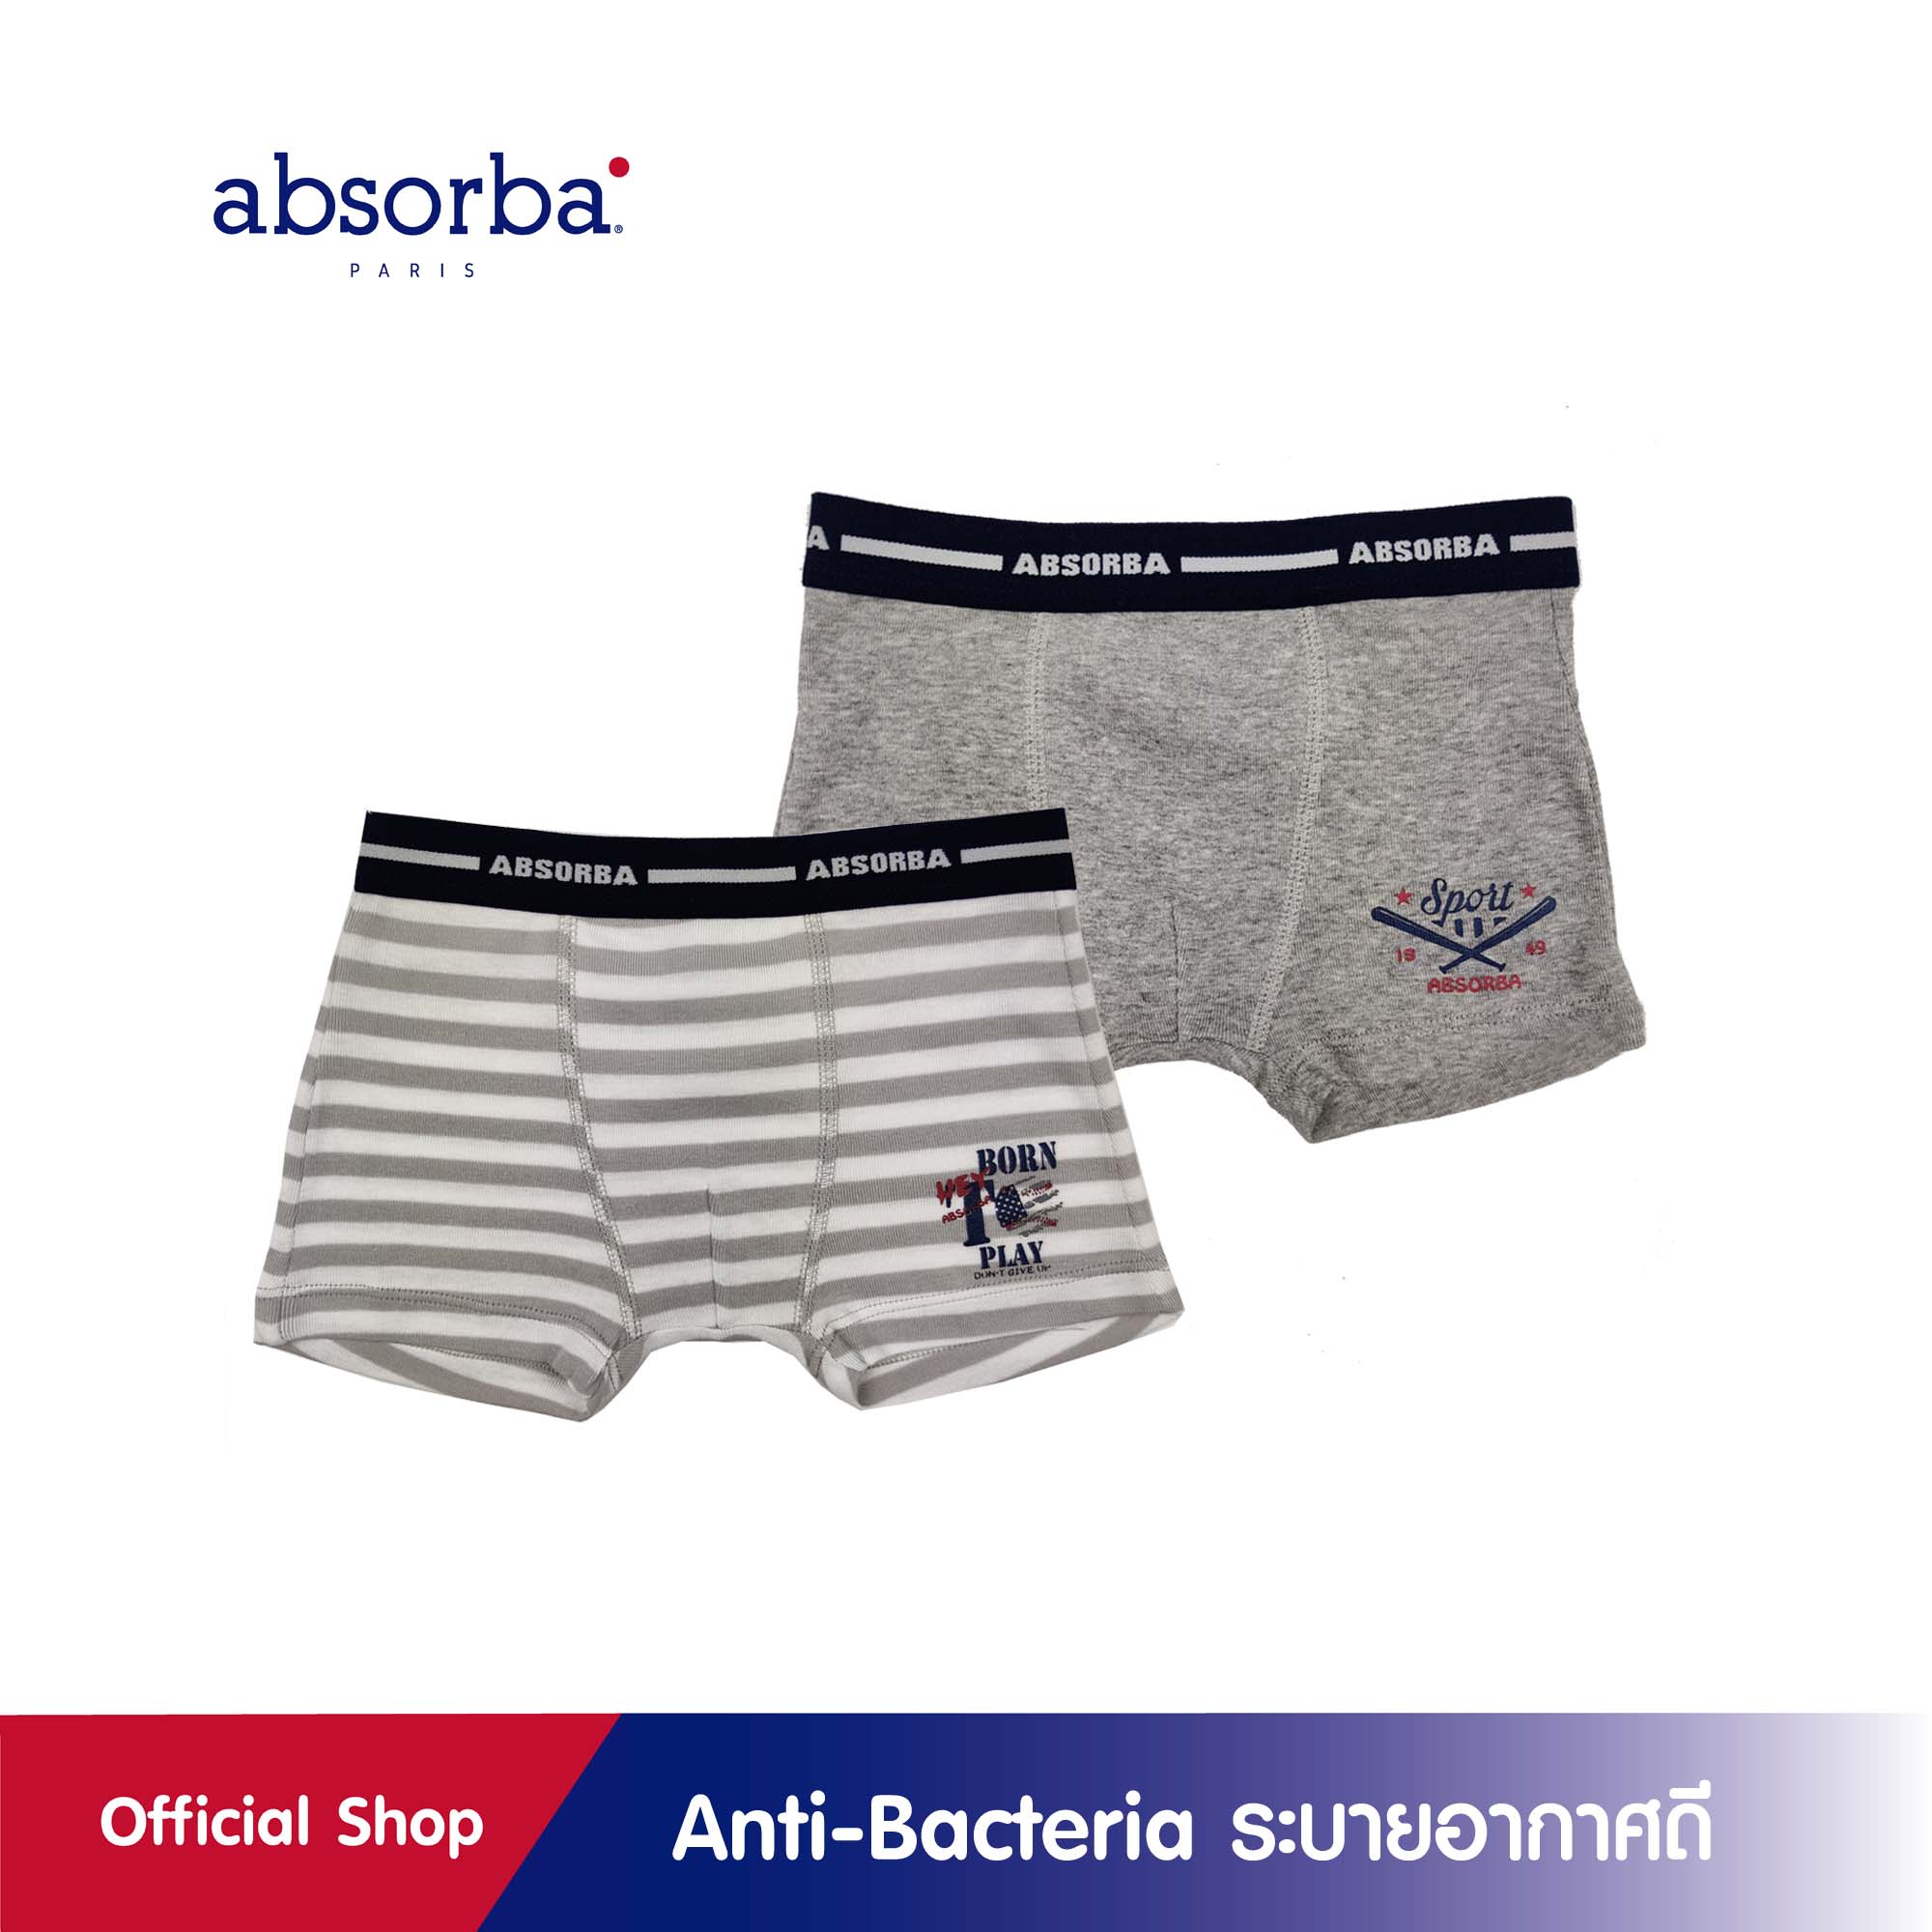 absorba(แอ็บซอร์บา)เซ็ตกางเกงในบ็อกเซอร์เด็กชาย สำหรับเด็กอายุ 1-13 ปี ลายริ้ว สีเทา แพ็ค 2 ชิ้น-R8W801FA